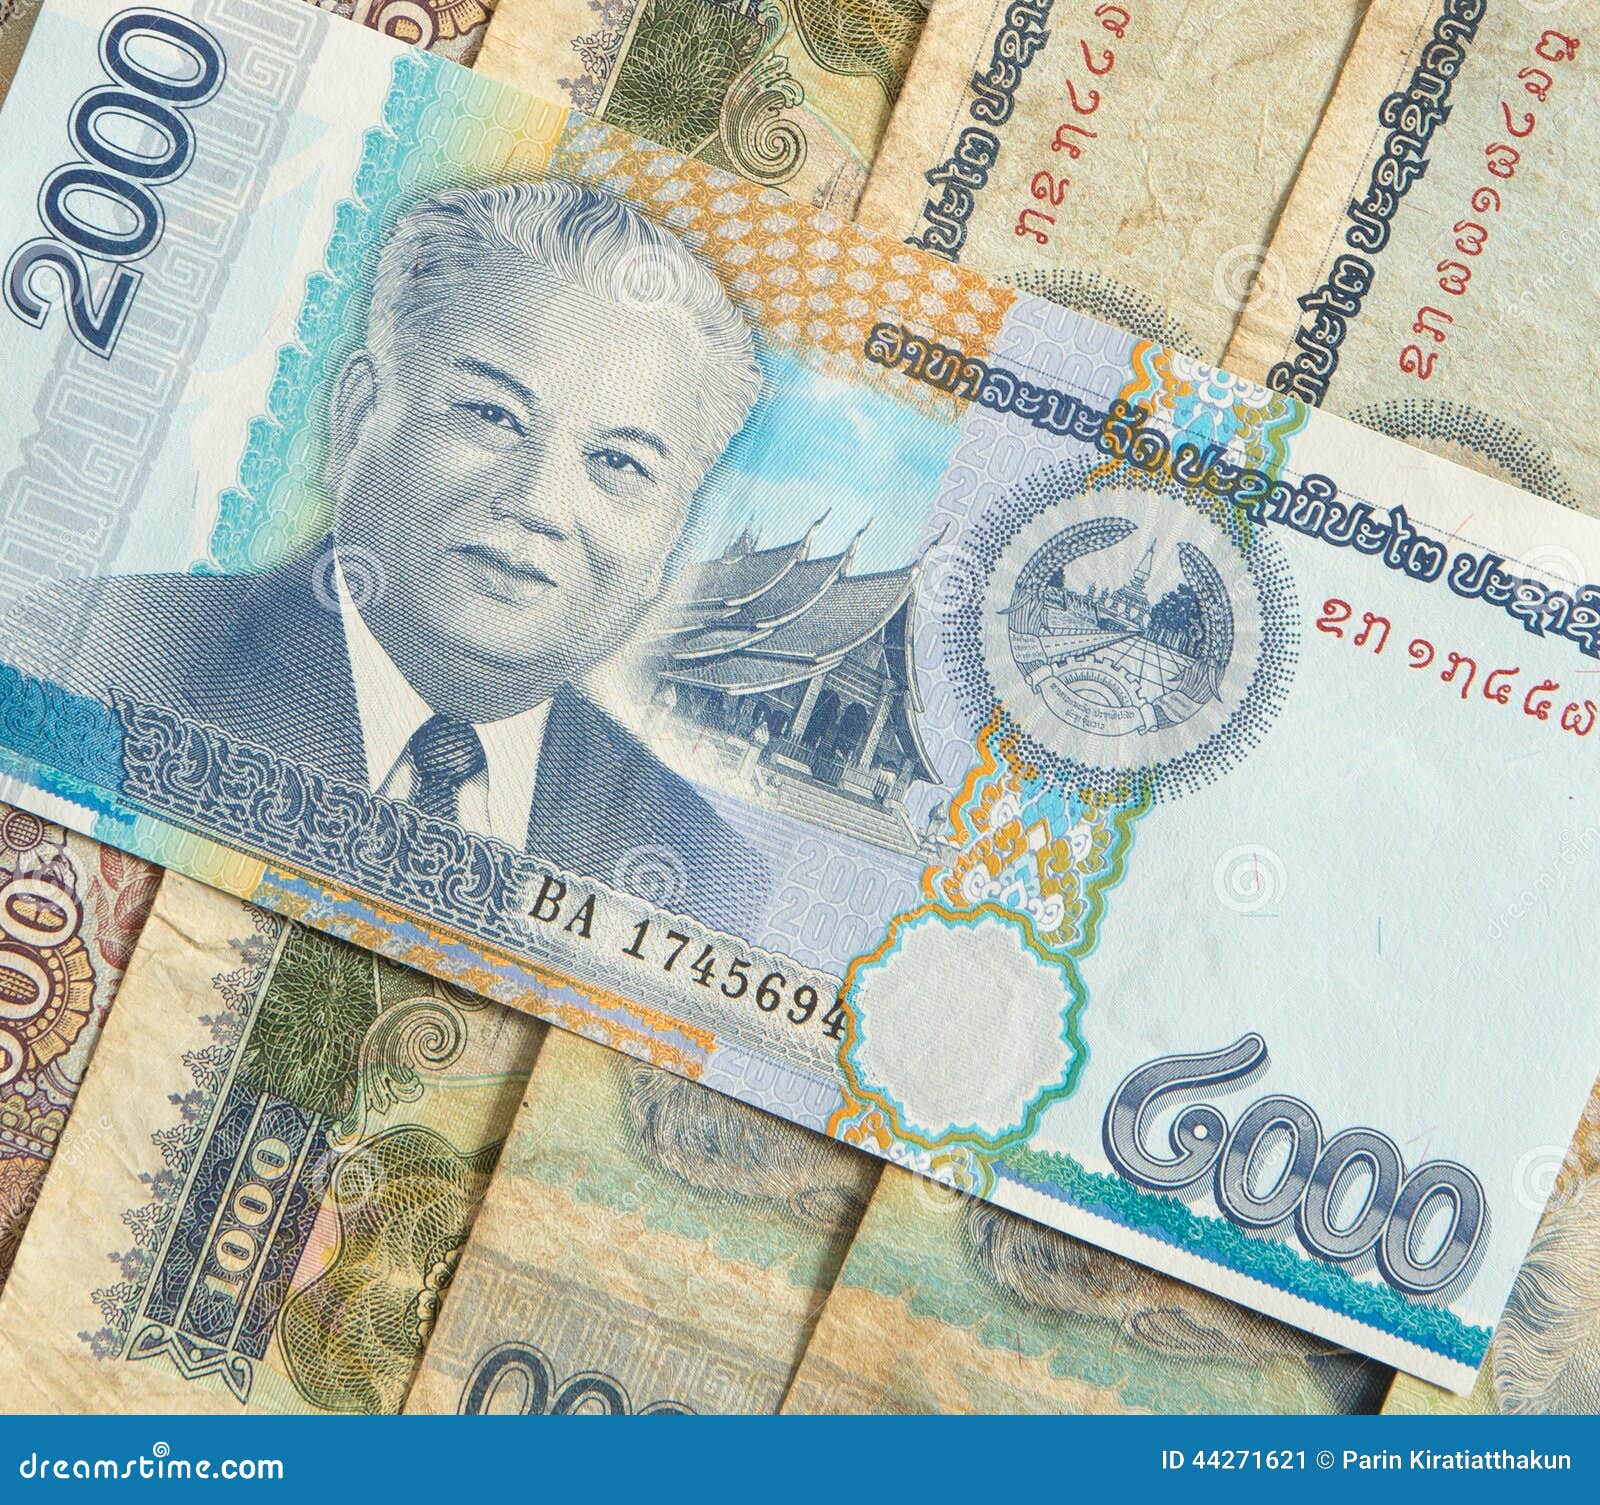 Какая самая ценная валюта. Самая ценная валюта. Валюта Лаоса. Самые дорогие деньги в мире. Деньги Лаоса.